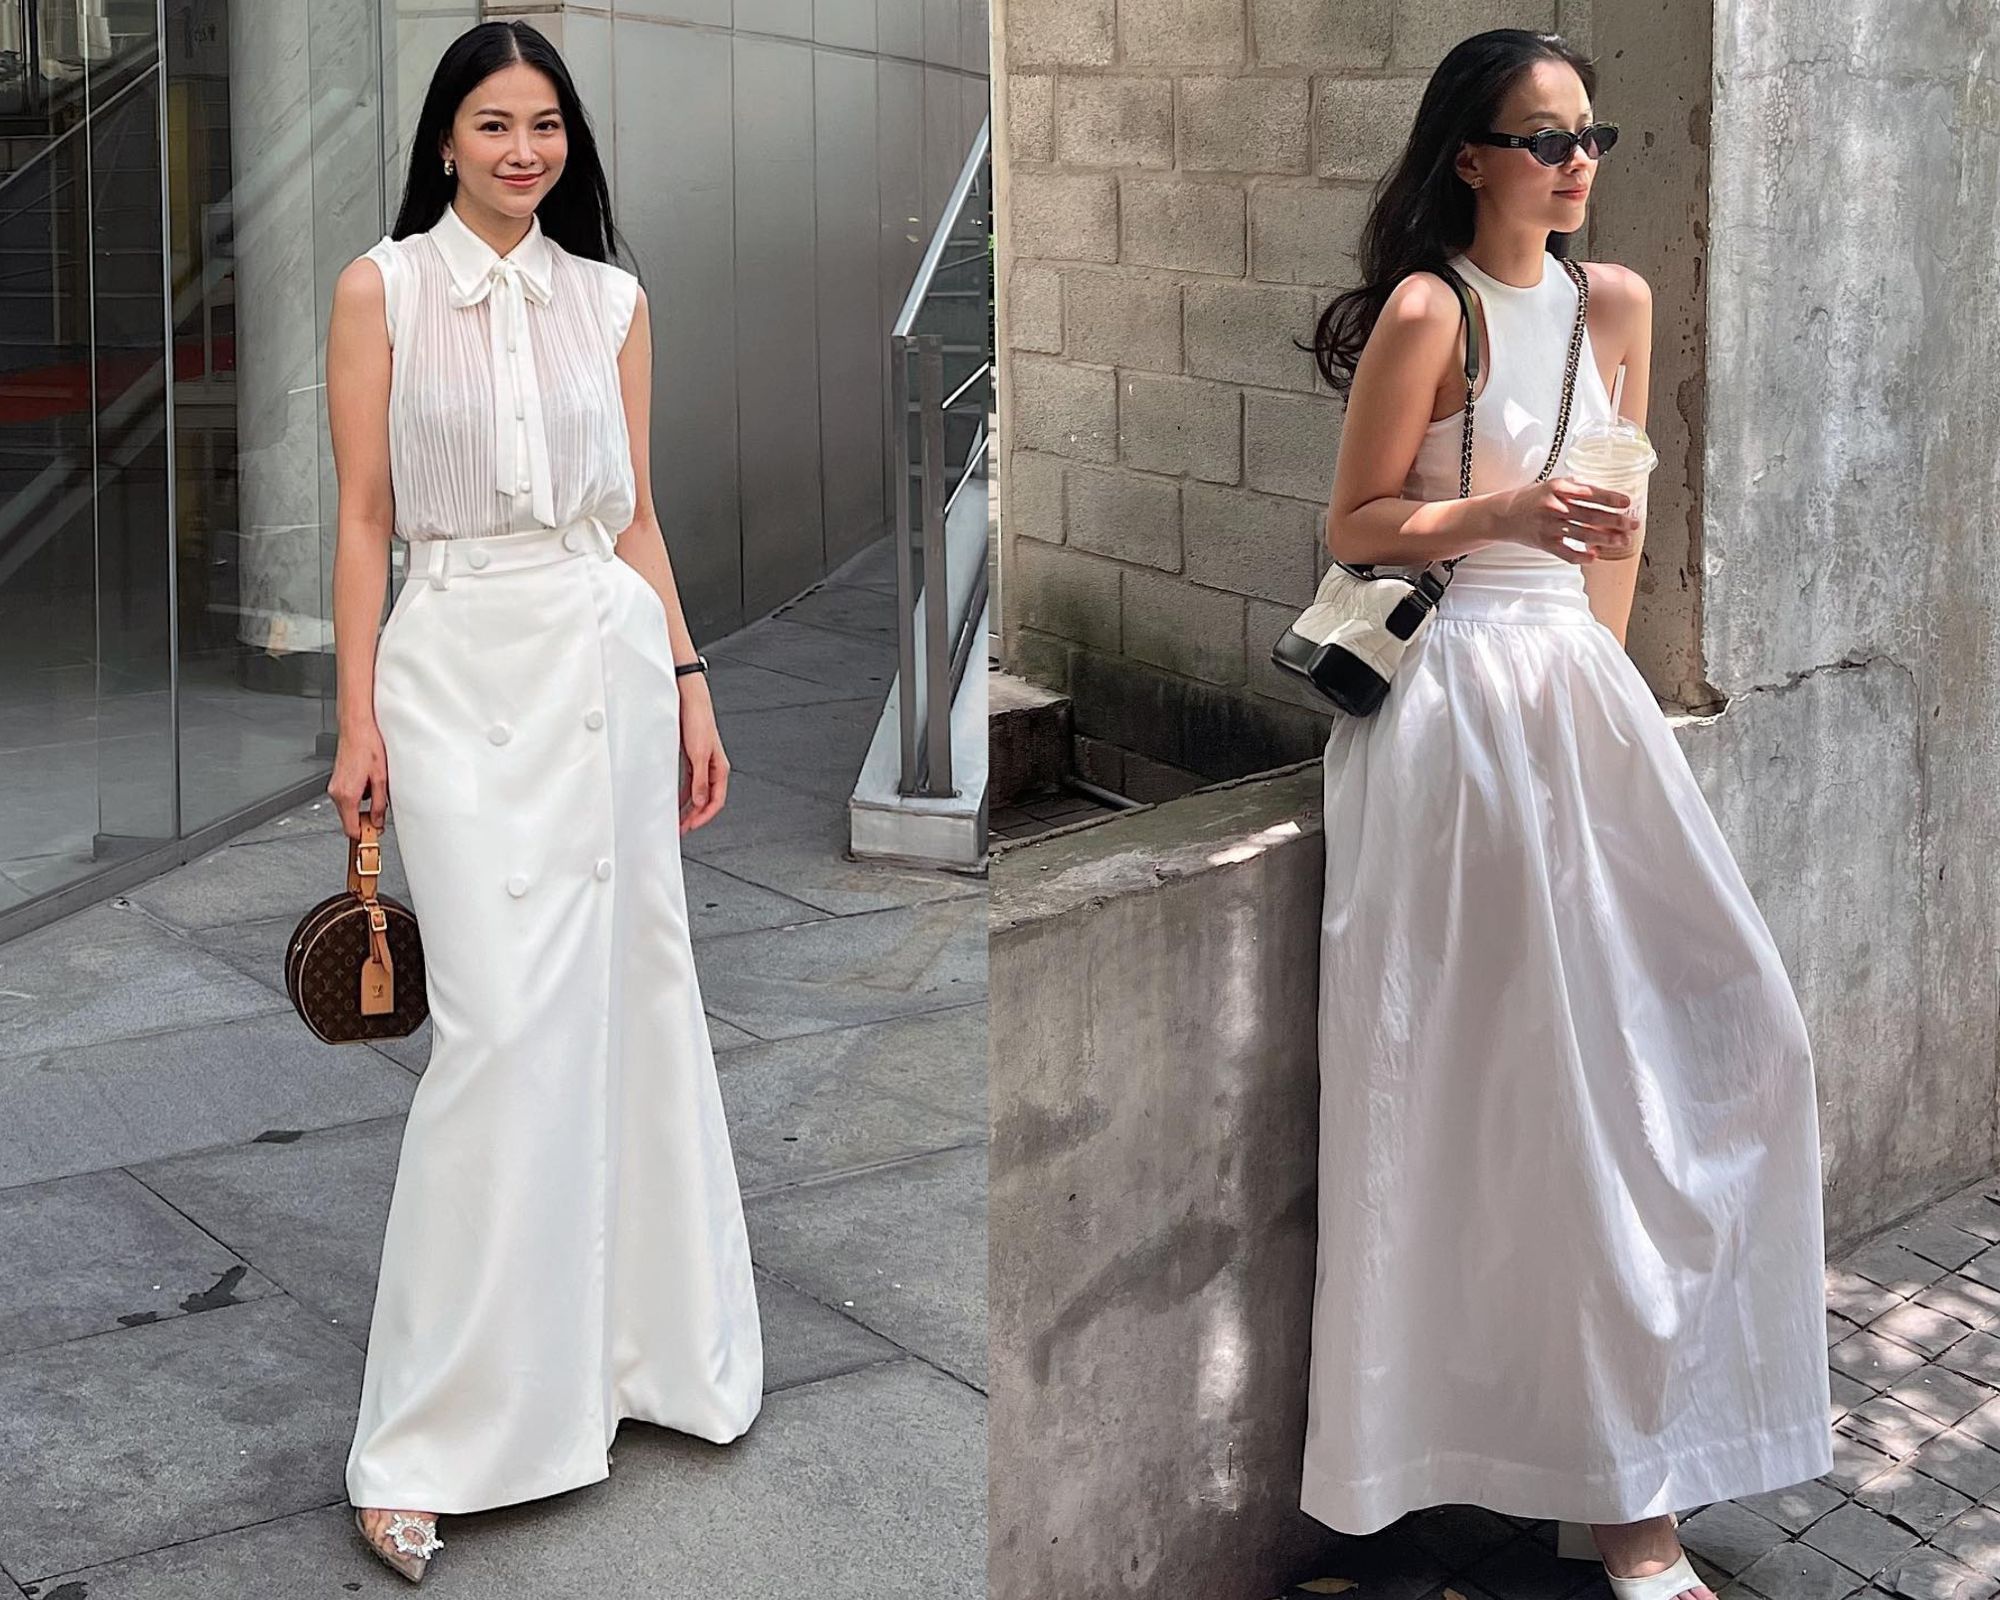 4 mỹ nhân Việt có phong cách diện đồ trắng sành điệu, đáng tham khảo - Ảnh 5.